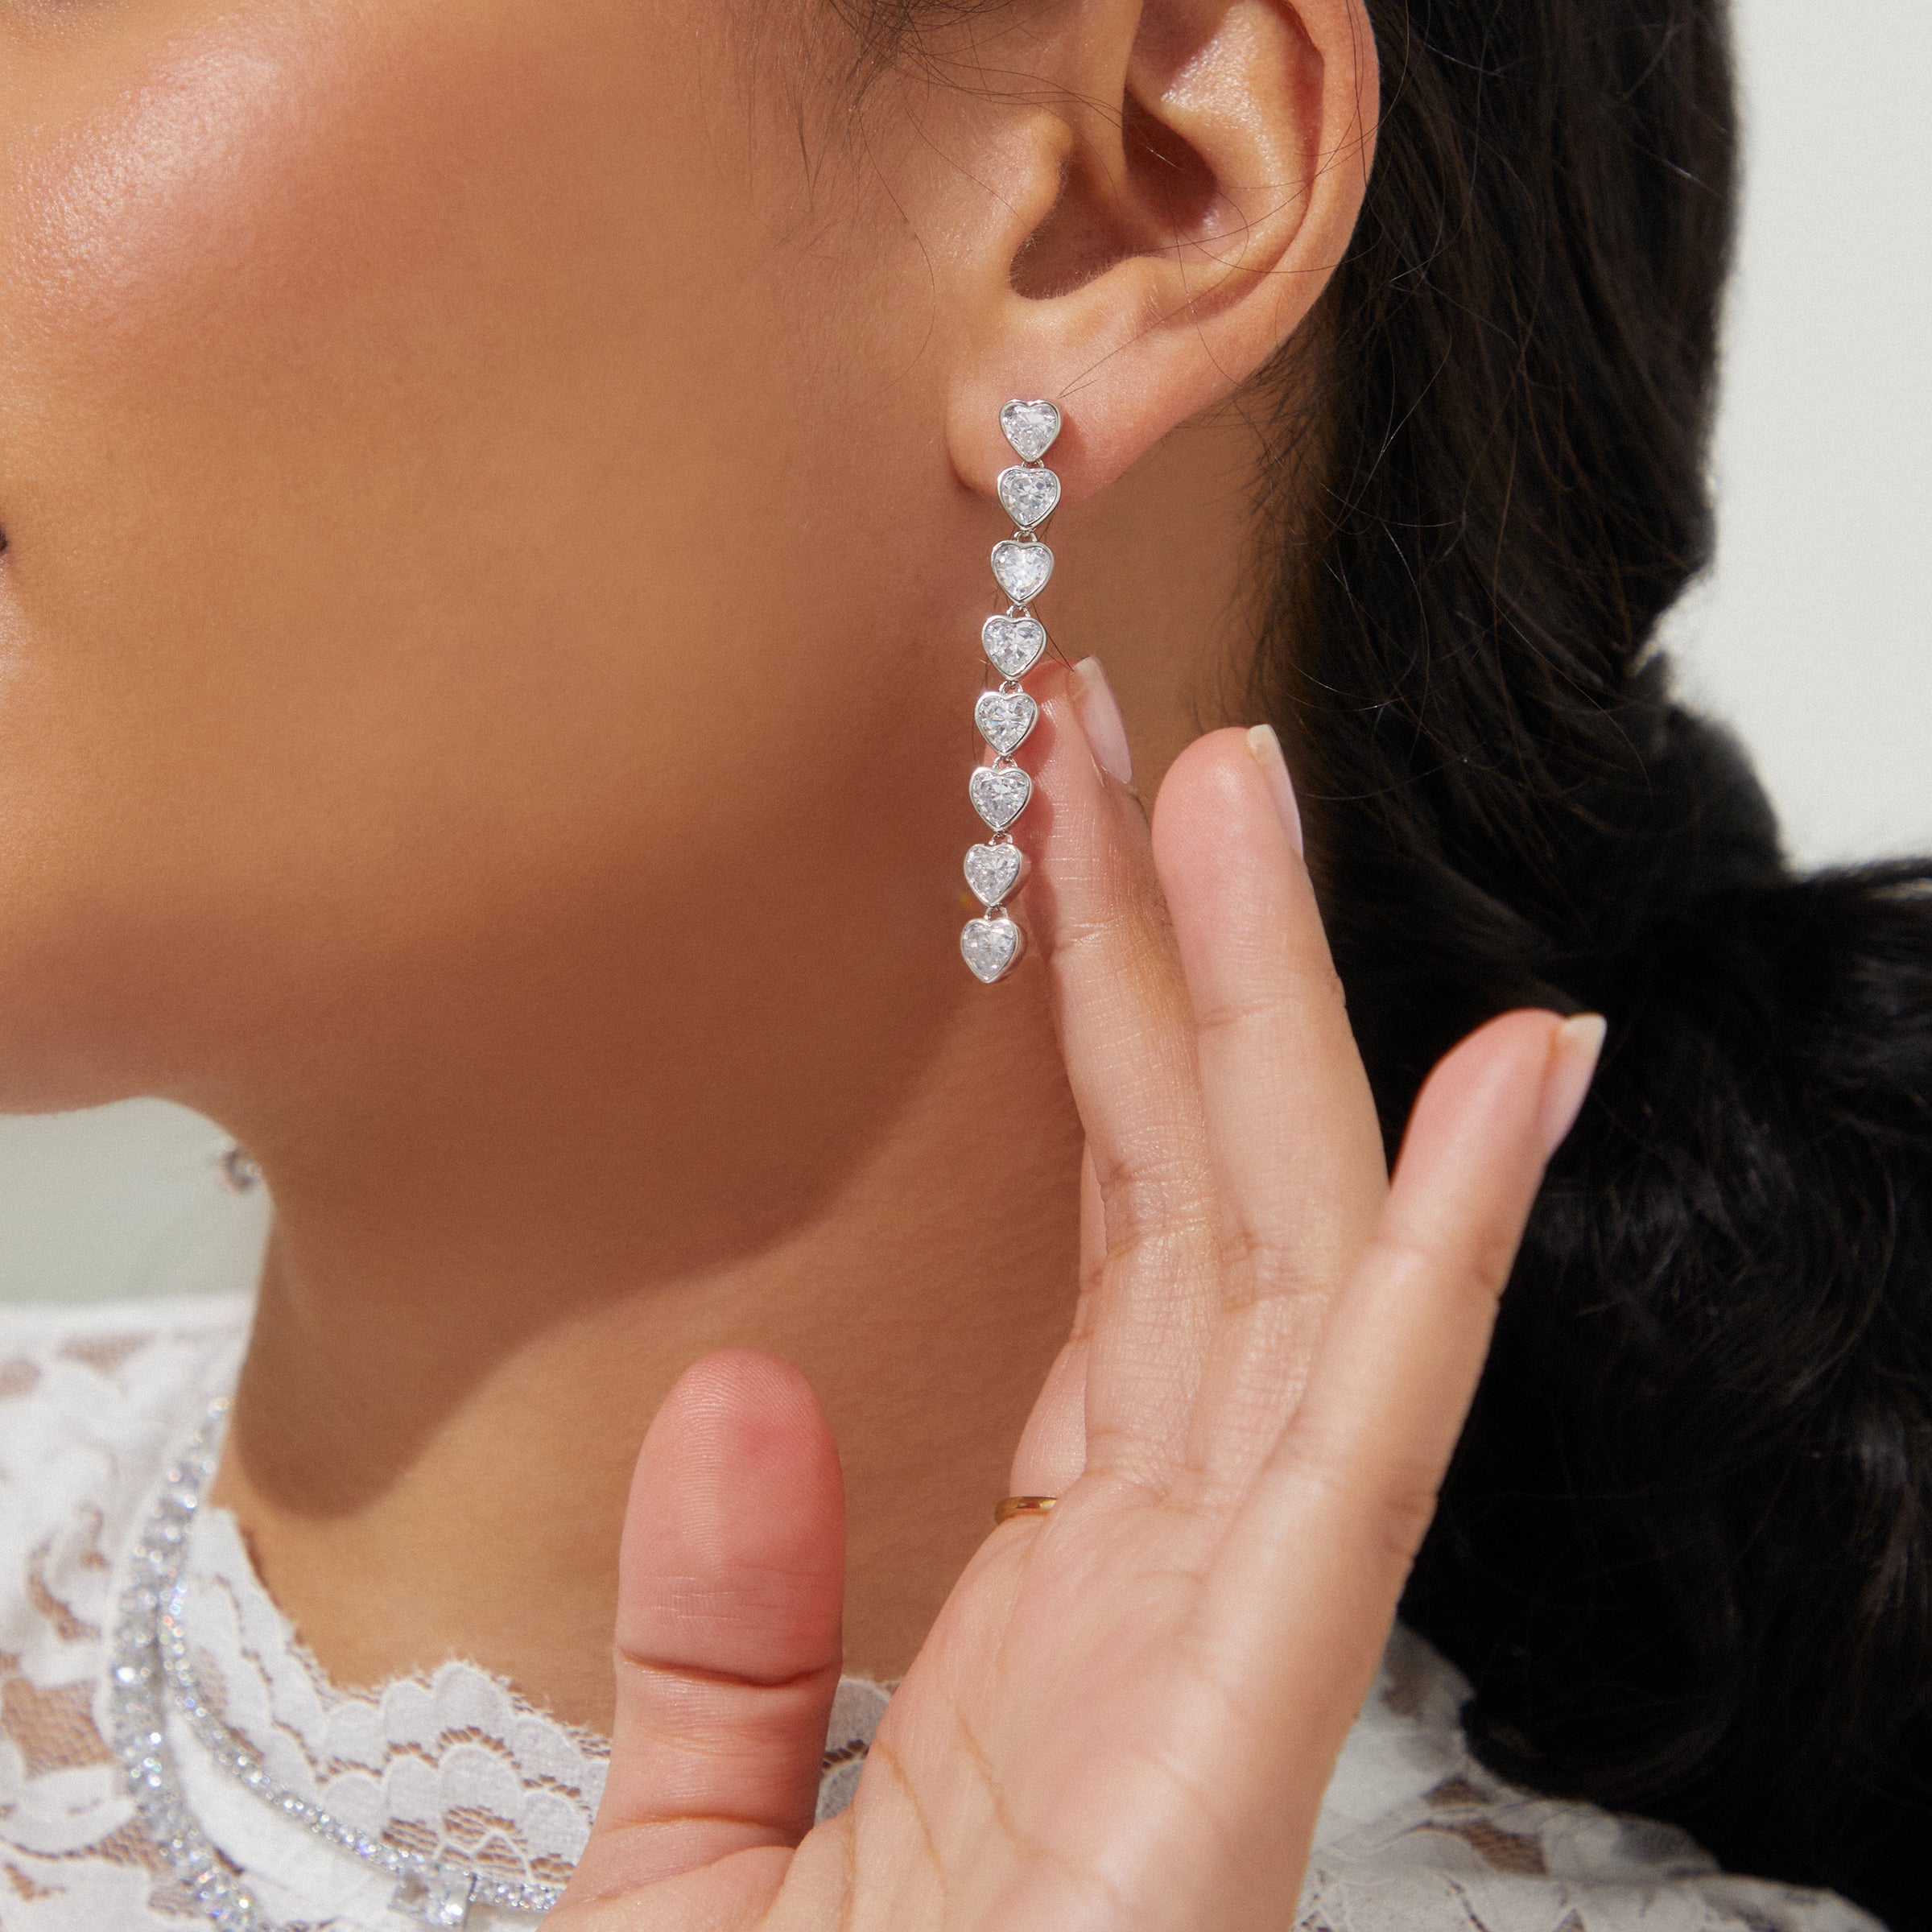 Triple Heart Crystal Rhinestone Dangle Earrings - Pierced